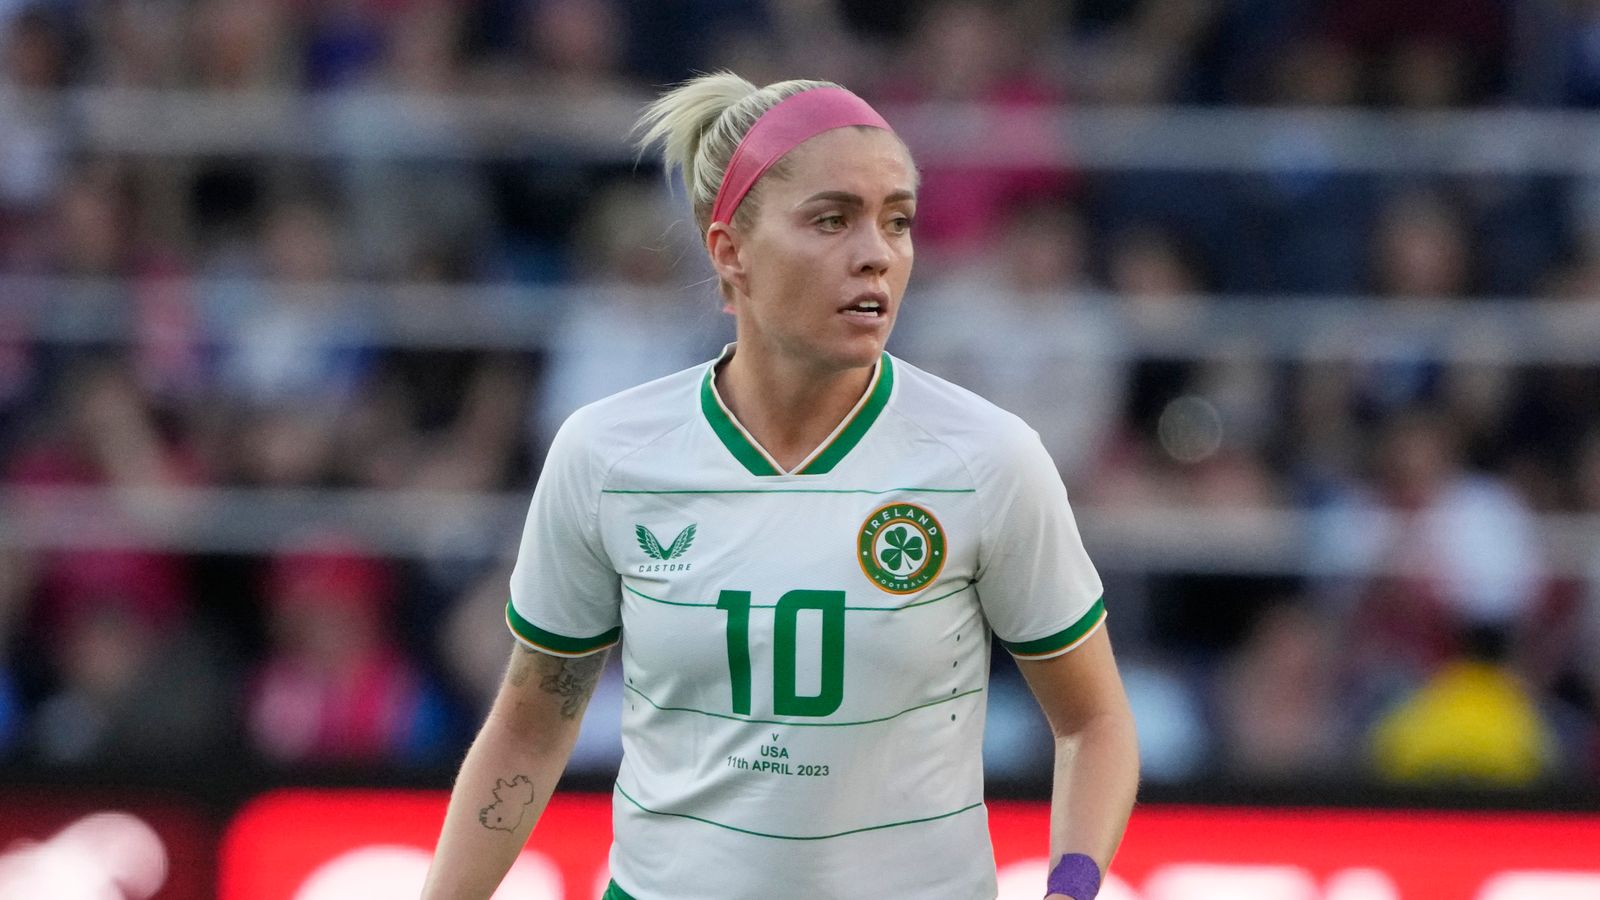 El amistoso de la República de Irlanda contra Colombia suspendido después de 20 minutos debido a que el juego fue ‘demasiado físico’ |  Noticias de futbol